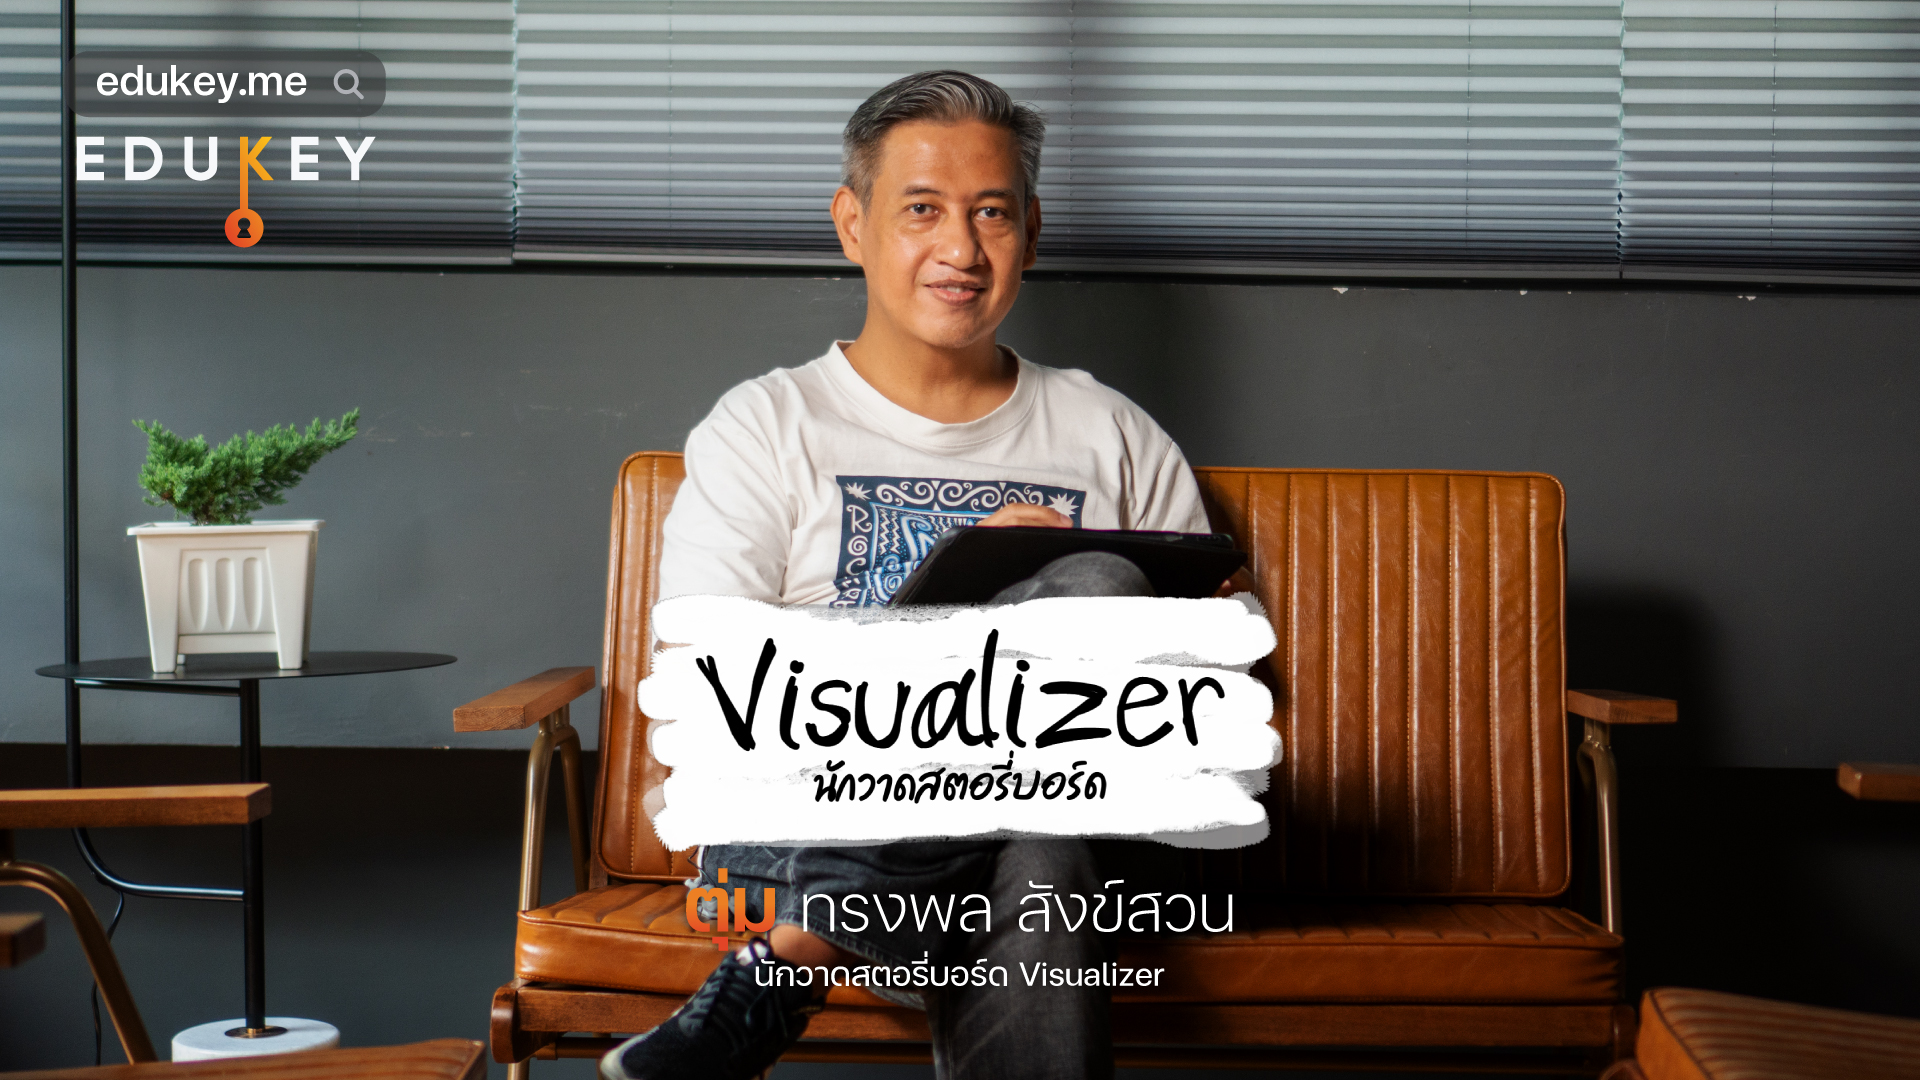 Visualizer นักแปลภาษาผ่านภาพสตอรี่บอร์ด